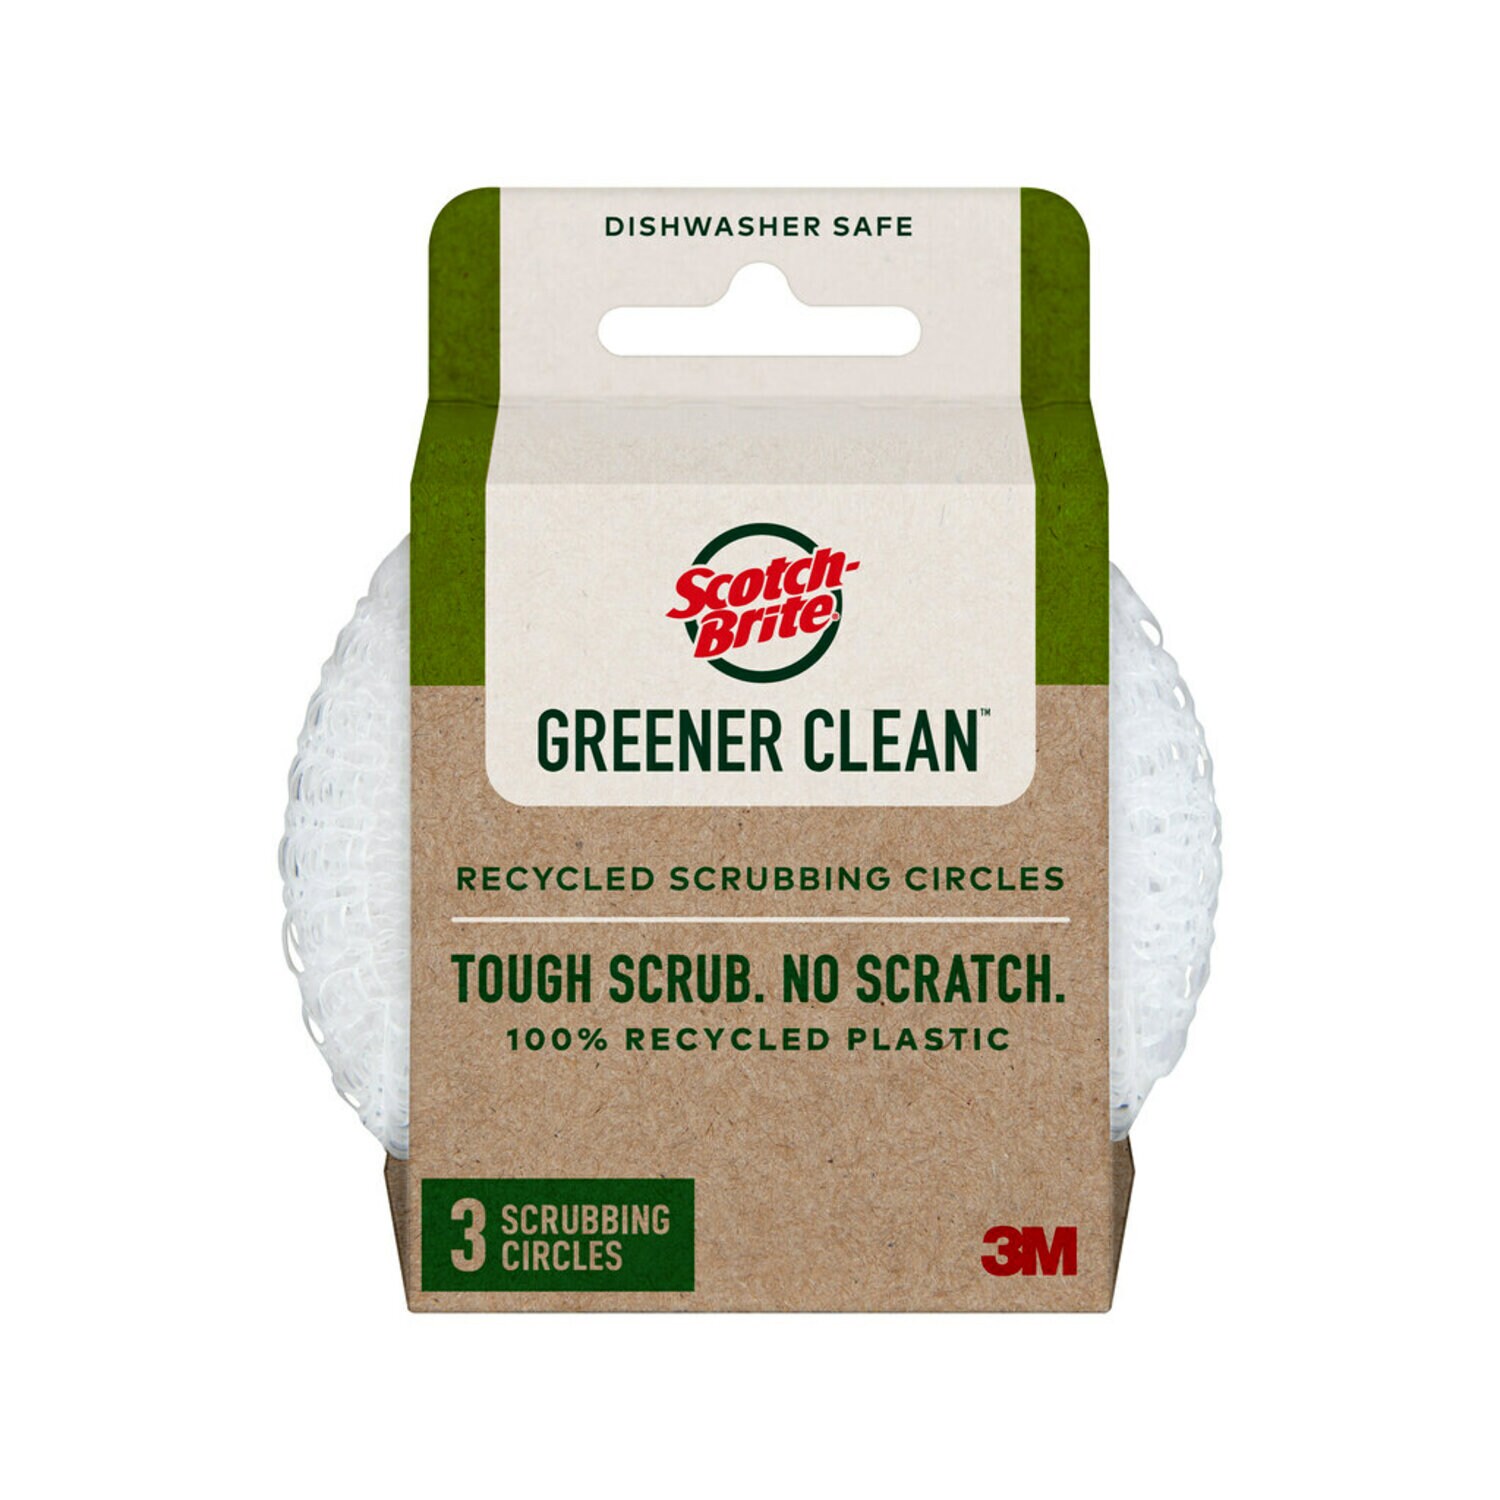 7100282851 - Scotch-Brite Greener Clean Recycled Scrubbing Circles 215-GC, 6/3